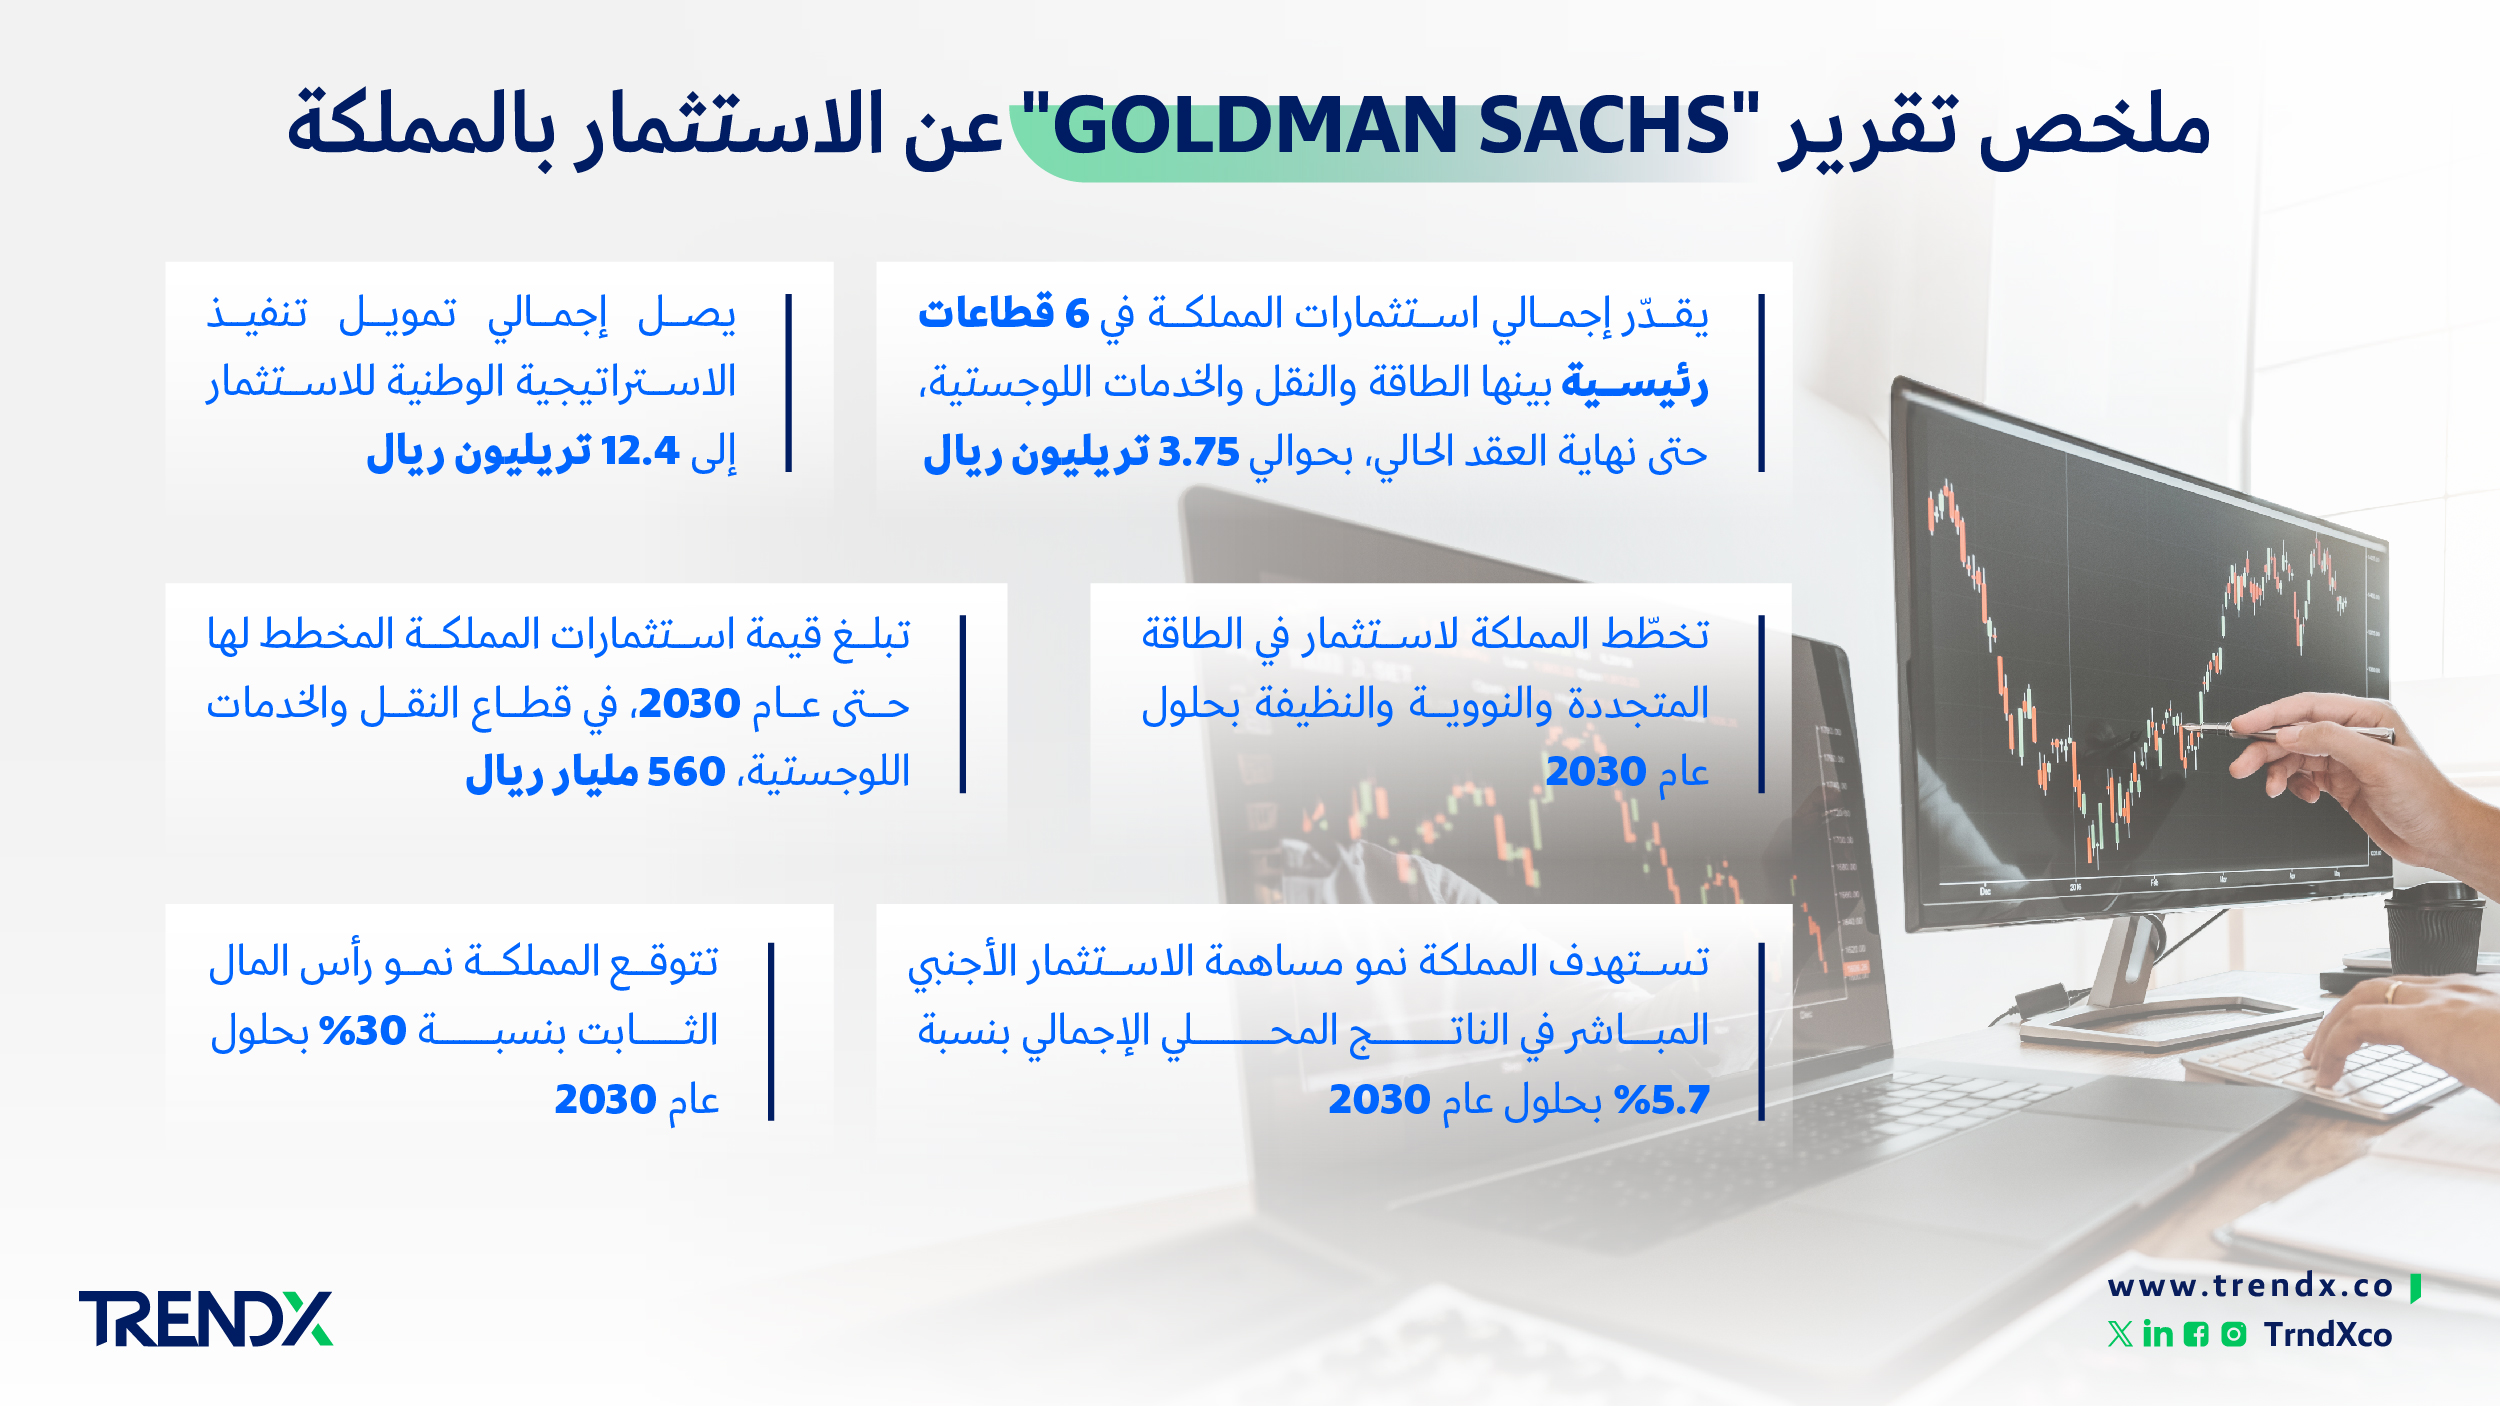 ملخص تقرير Goldman Sachs عن الاستثمار بالمملكة ثروات السعوديين في الفترة من عام 2000 إلى 2022 01